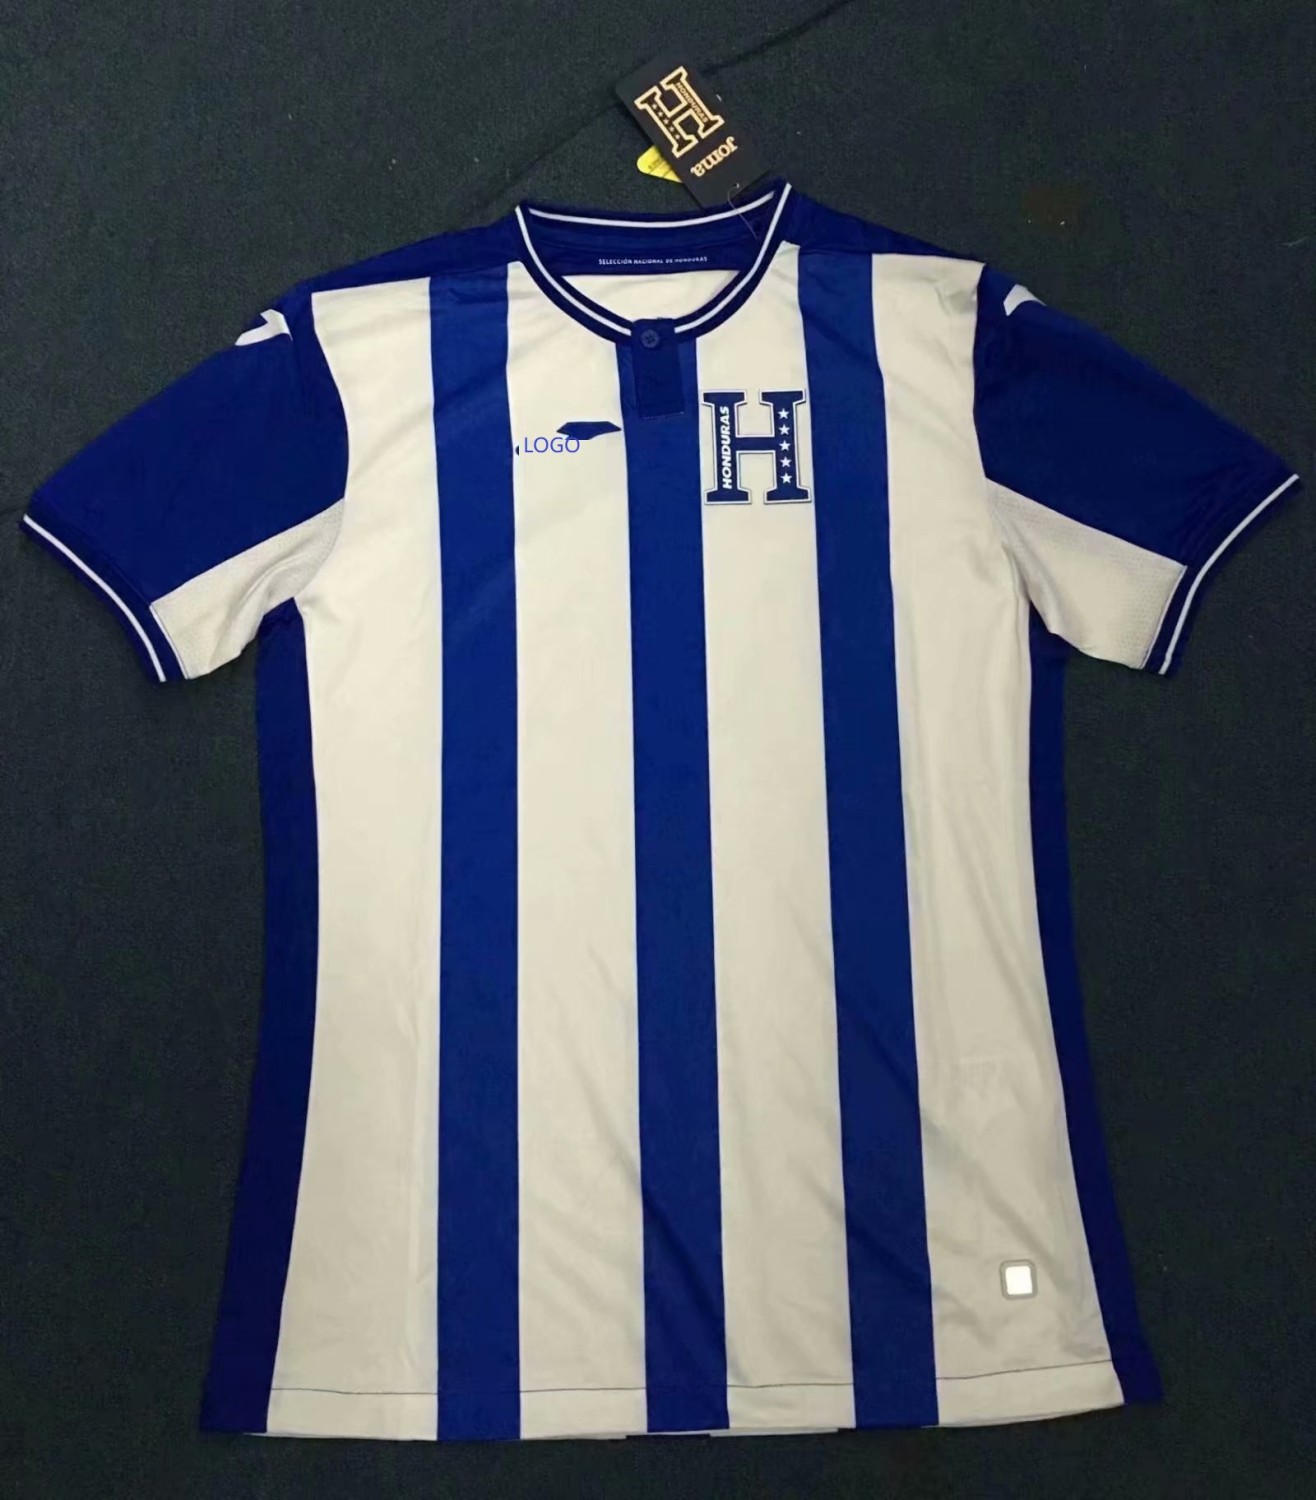 honduras soccer jersey